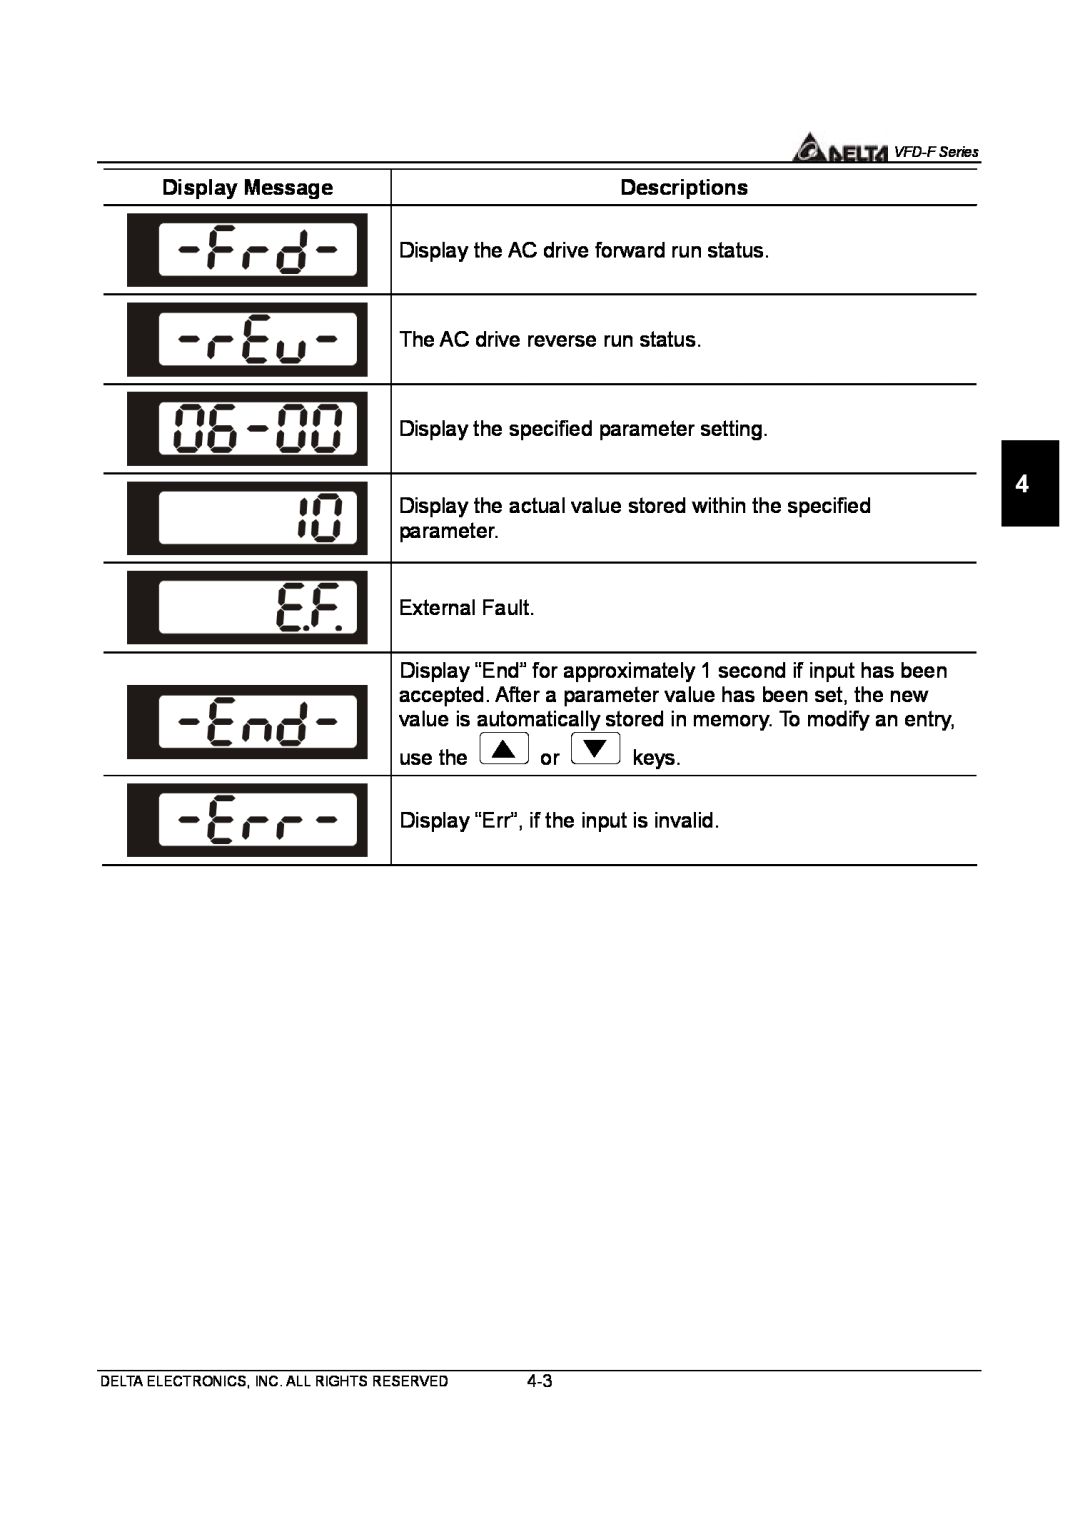 Delta Electronics VFD-F Series manual Display Message, Descriptions, Display the AC drive forward run status 